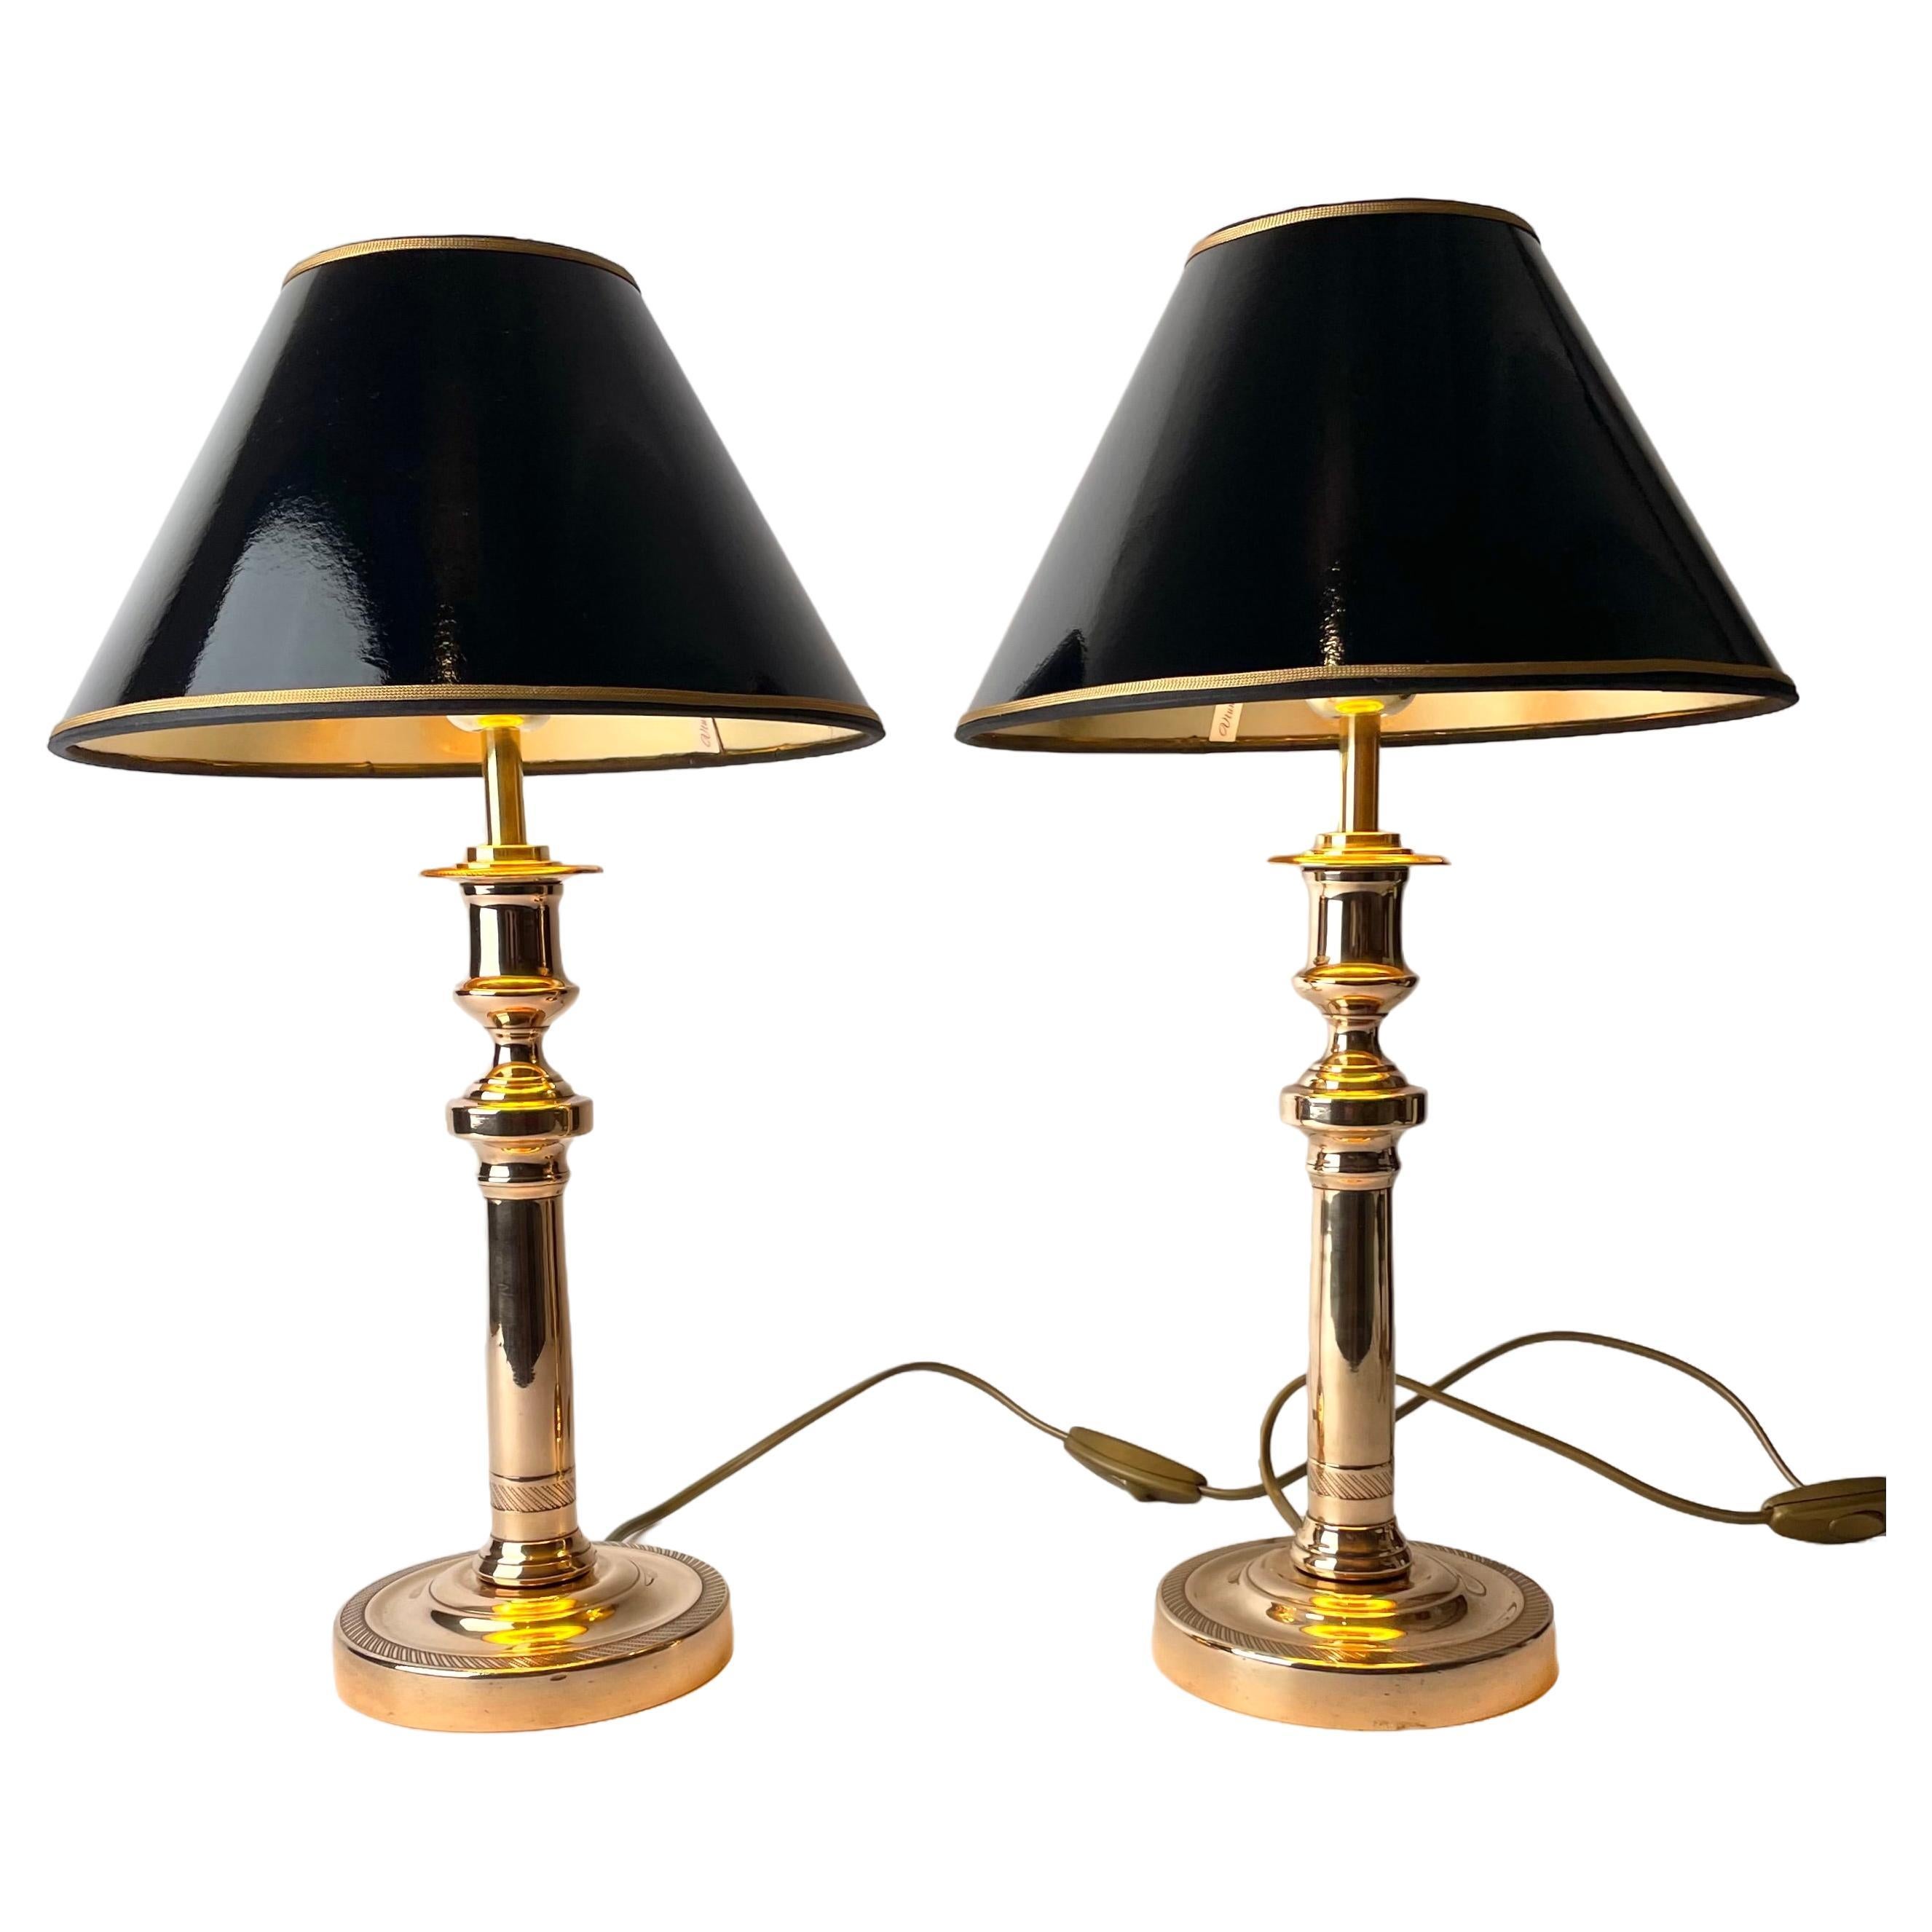 Schönes Paar Empire-Tischlampen, ursprünglich Kerzenleuchter aus den 1820er Jahren